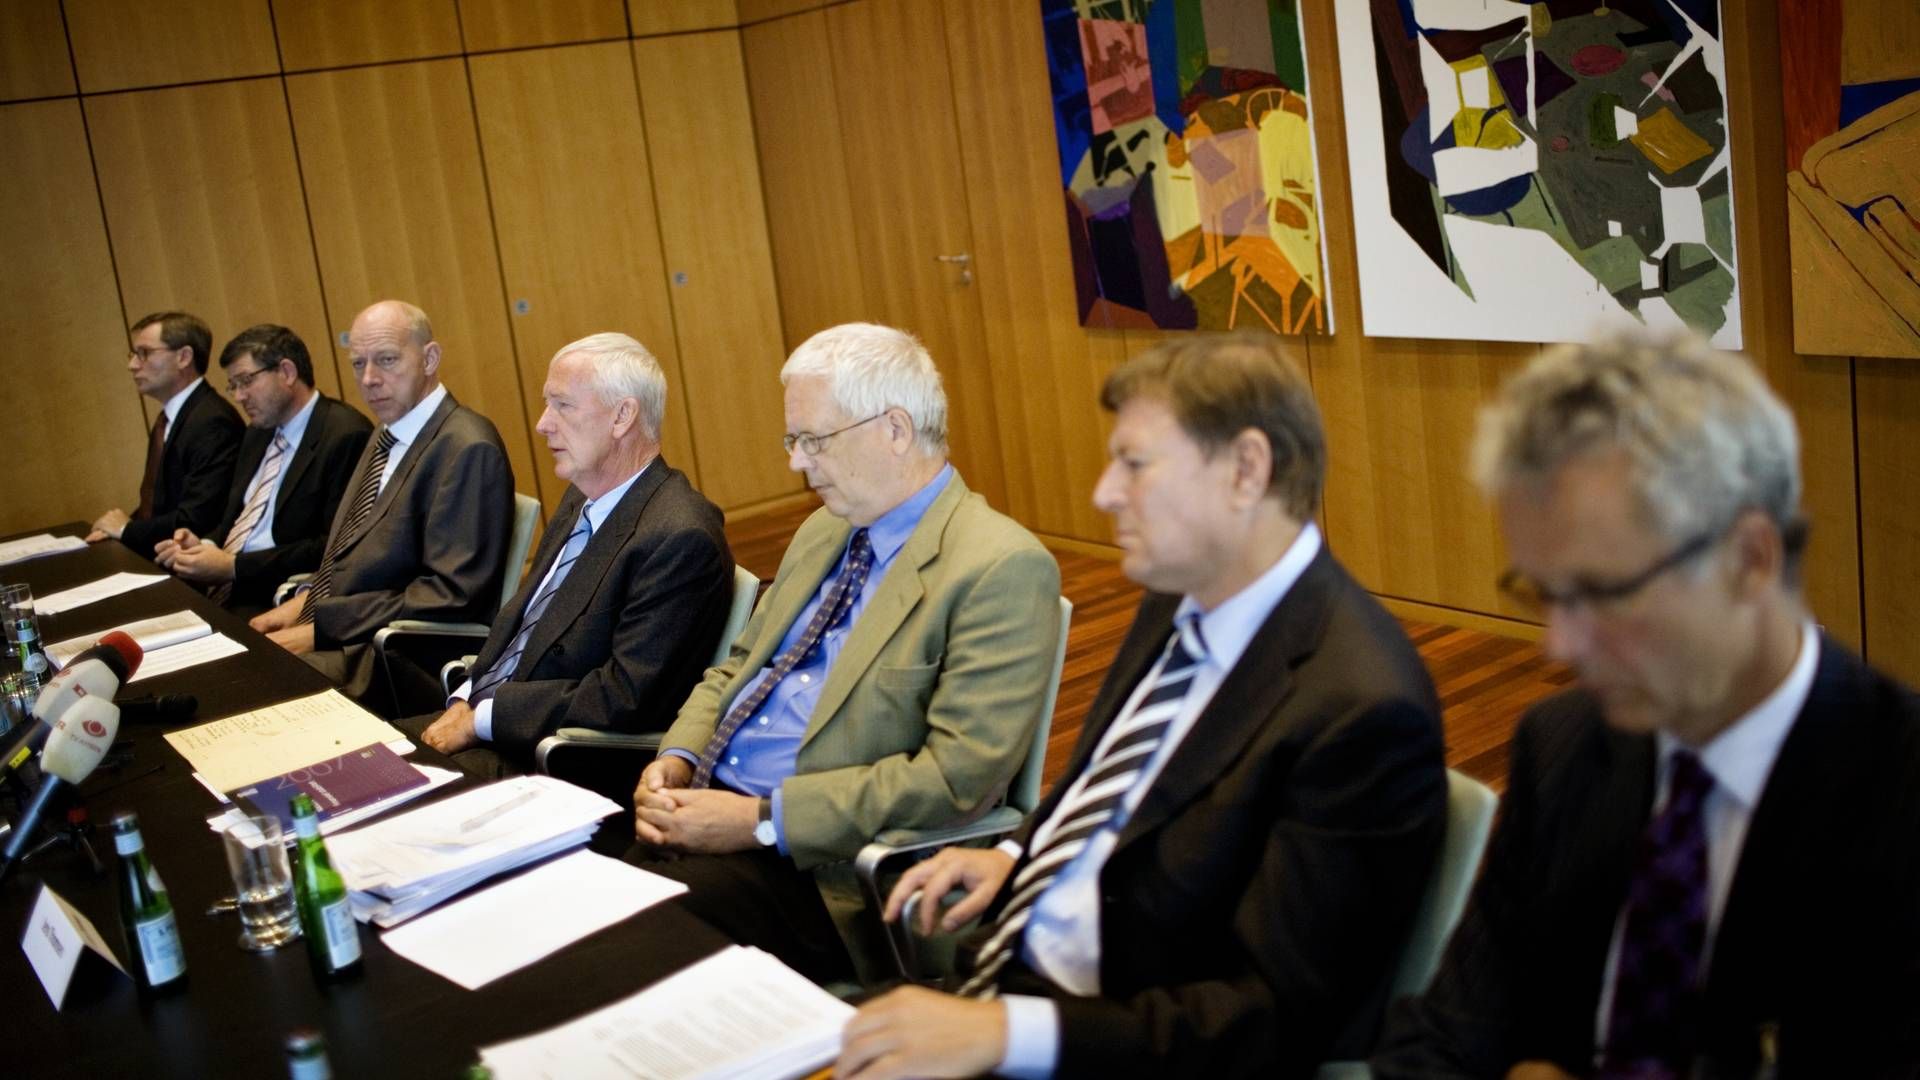 Henrik Bjerre-Nielsen befinder sig yderst til højre i billeder fra det pressemøde, hvor daværende direktør for Nationalbanken, Nils Bernstein, præsenterer en redningsplan for Roskilde Bank i sommeren 2008. | Foto: Miriam Dalsgaard/Arkivfote